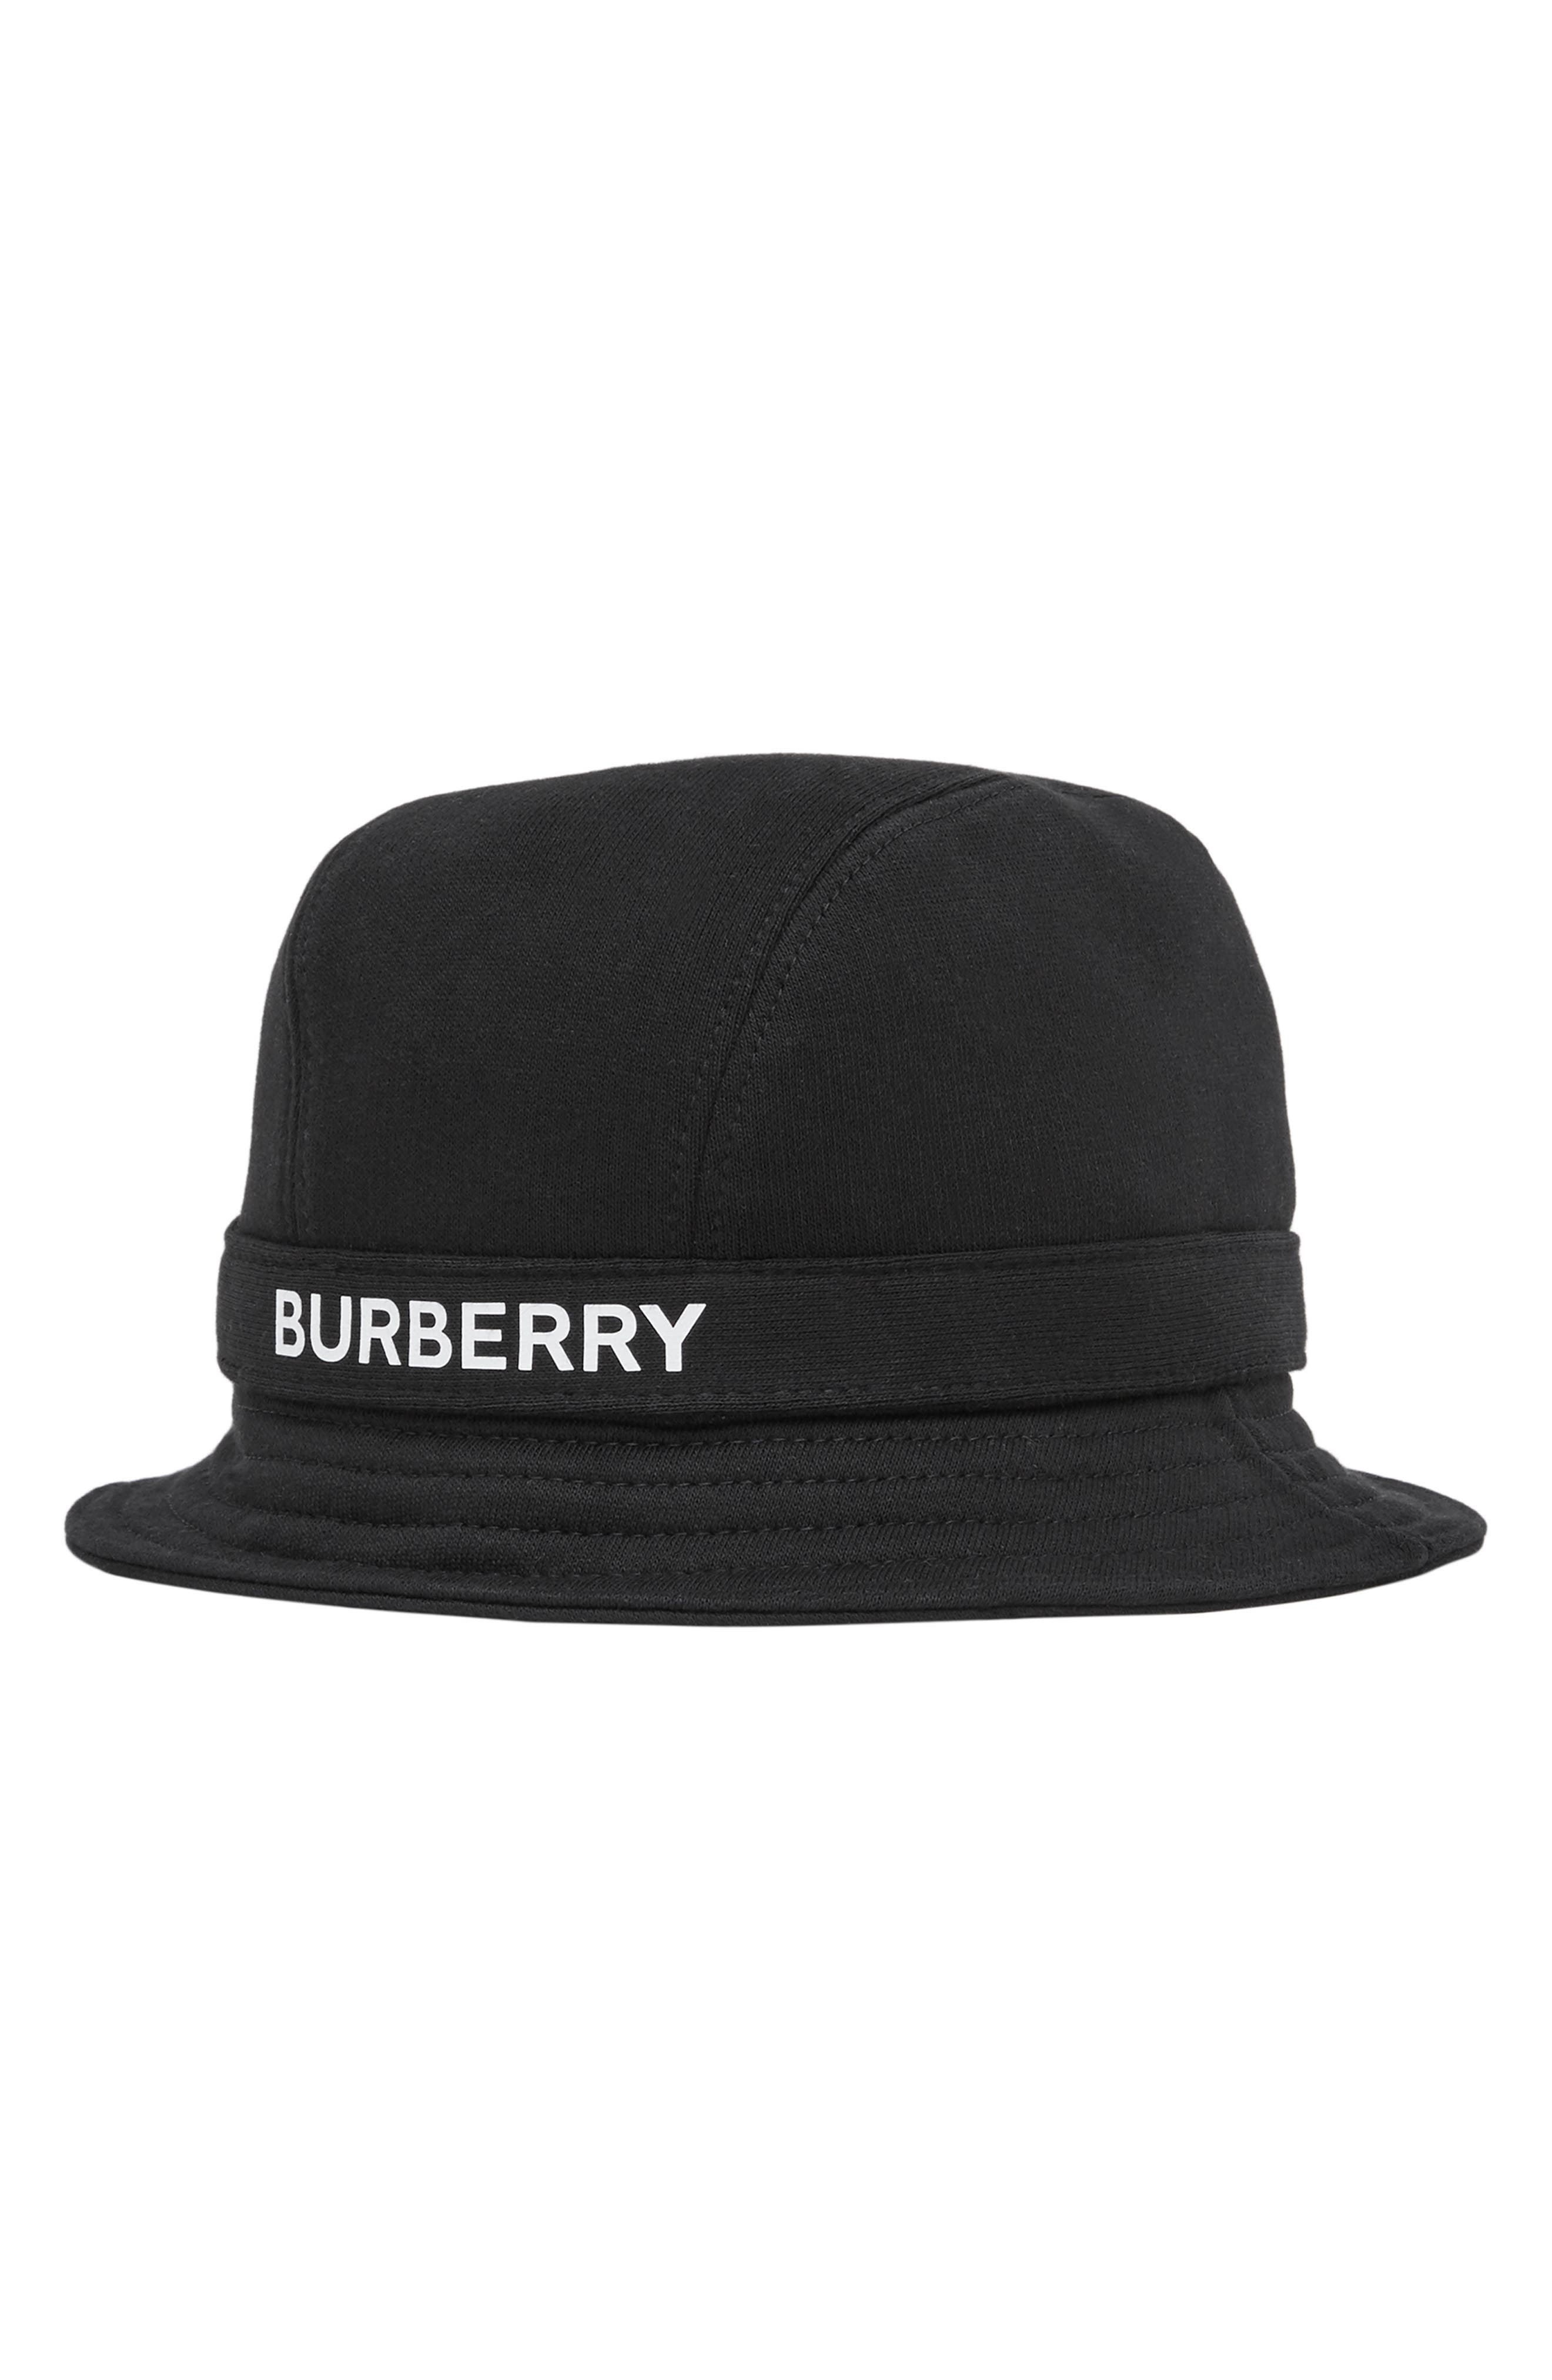 burberry bucket hat nordstrom